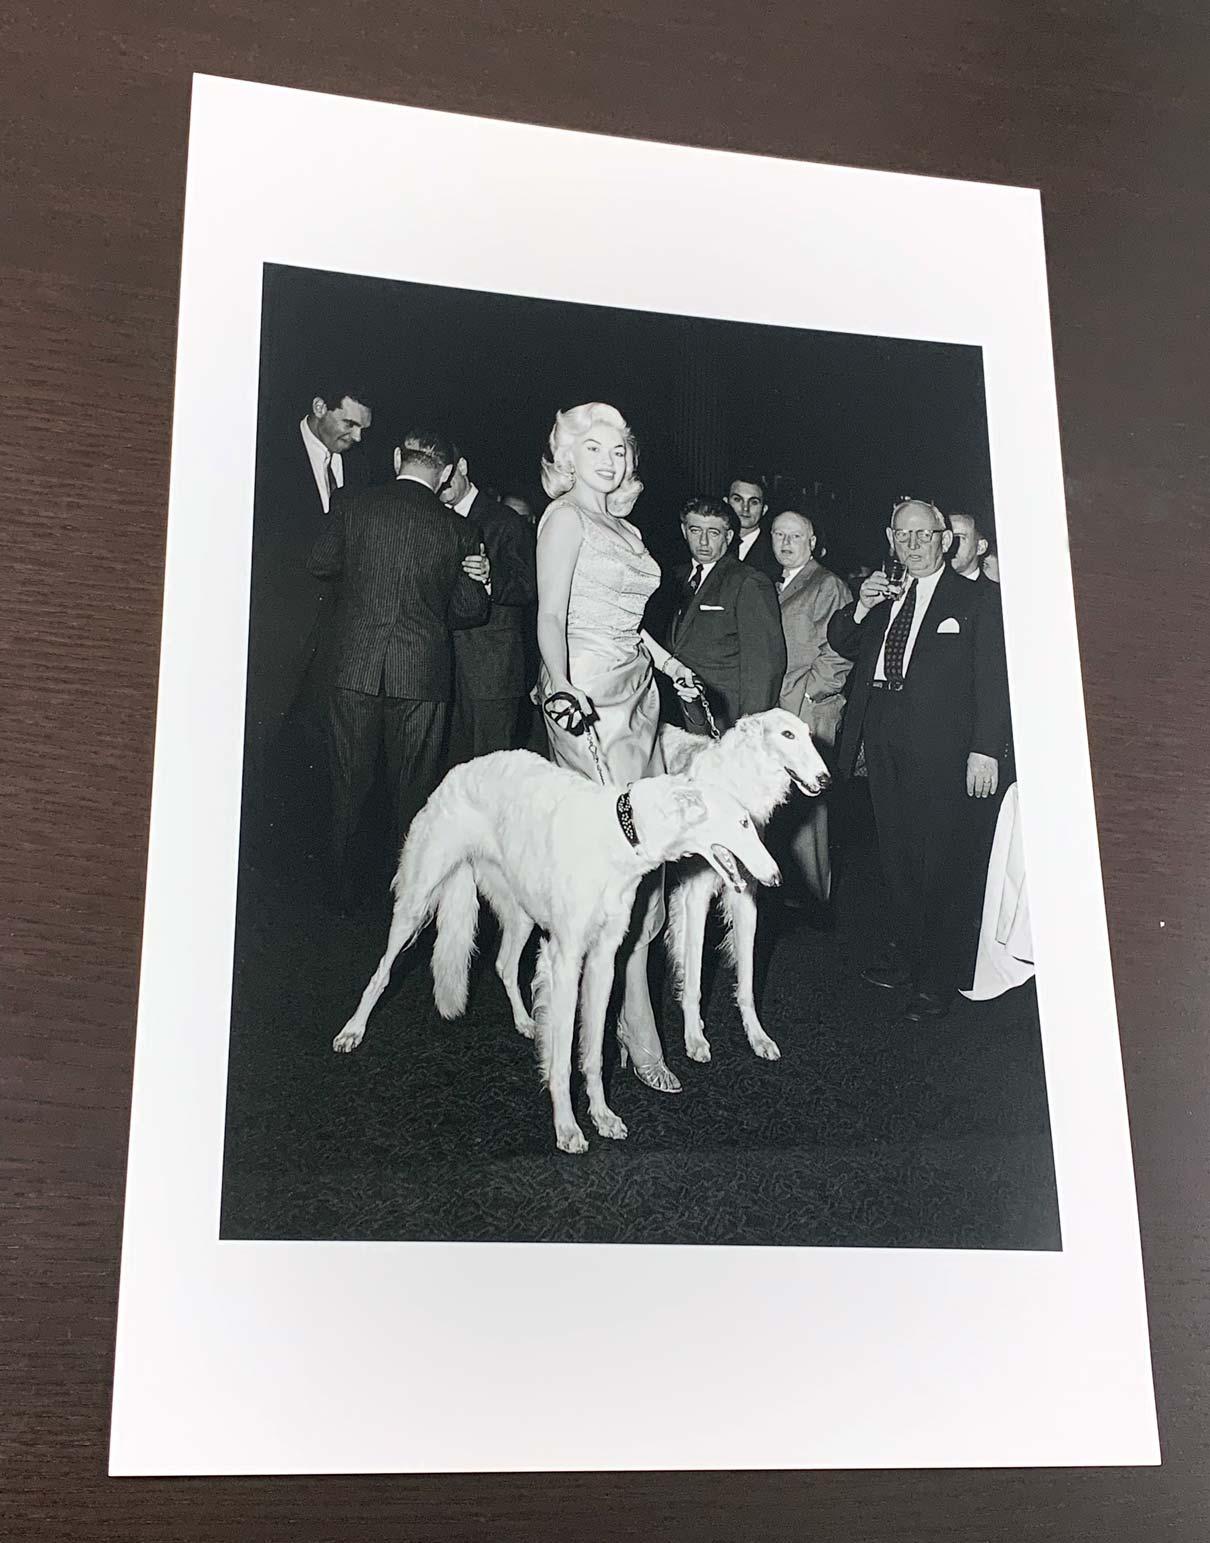 Jayne Mansfield with Seagrams Dogs (édition limitée à 10 exemplaires, n° 6/10) - 76,2 x 101,6 cm - Photograph de Barry Kramer